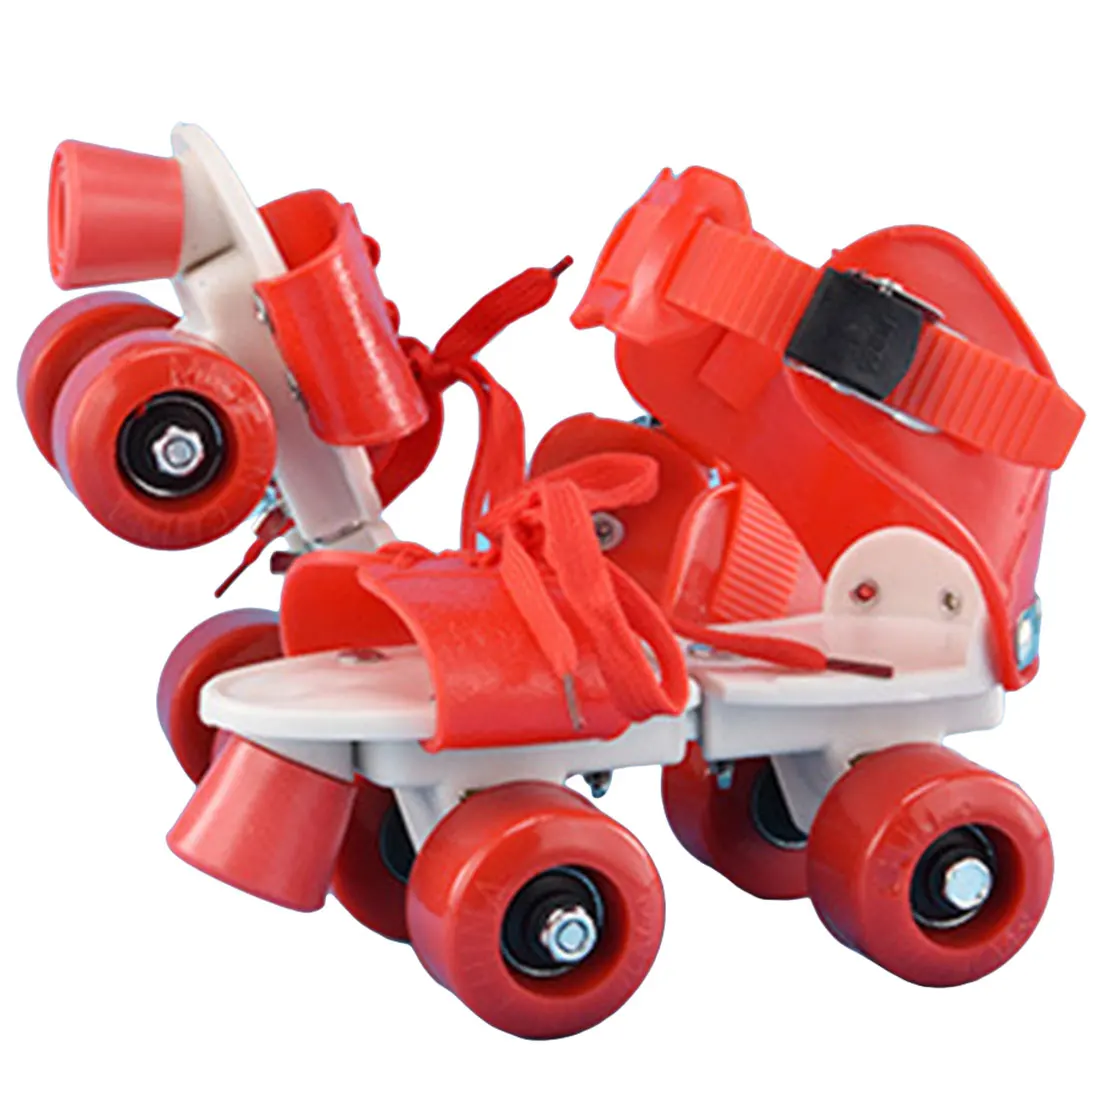 Детские роликовые коньки двухрядные 4 колеса регулируемый размер катания обувь раздвижные Инлайн ролики для слалома детские подарки - Цвет: B